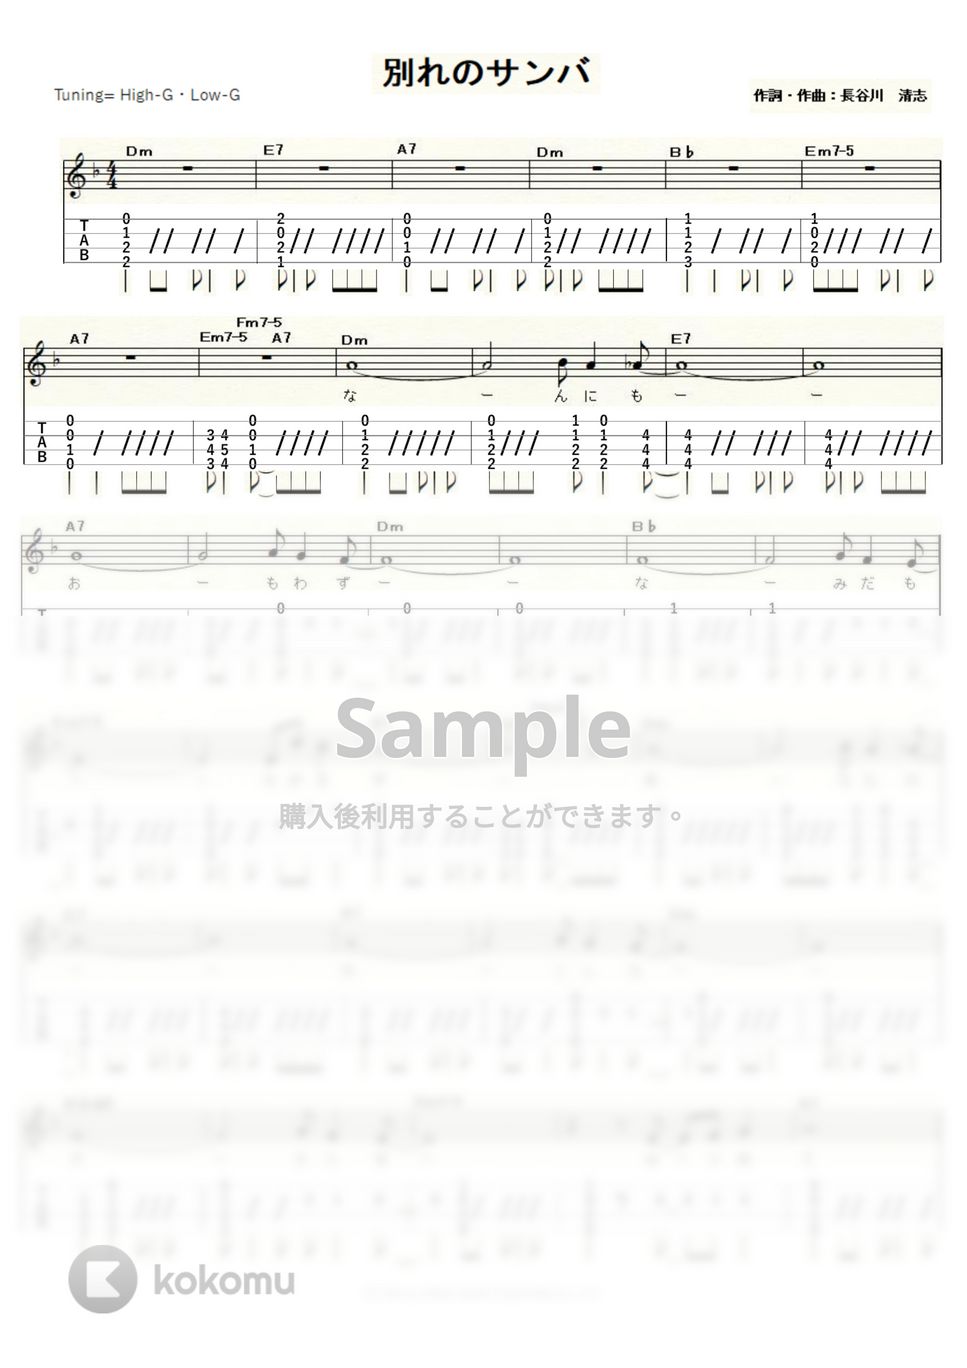 長谷川きよし - 別れのサンバ (High-G,Low-G) by ukulelepapa